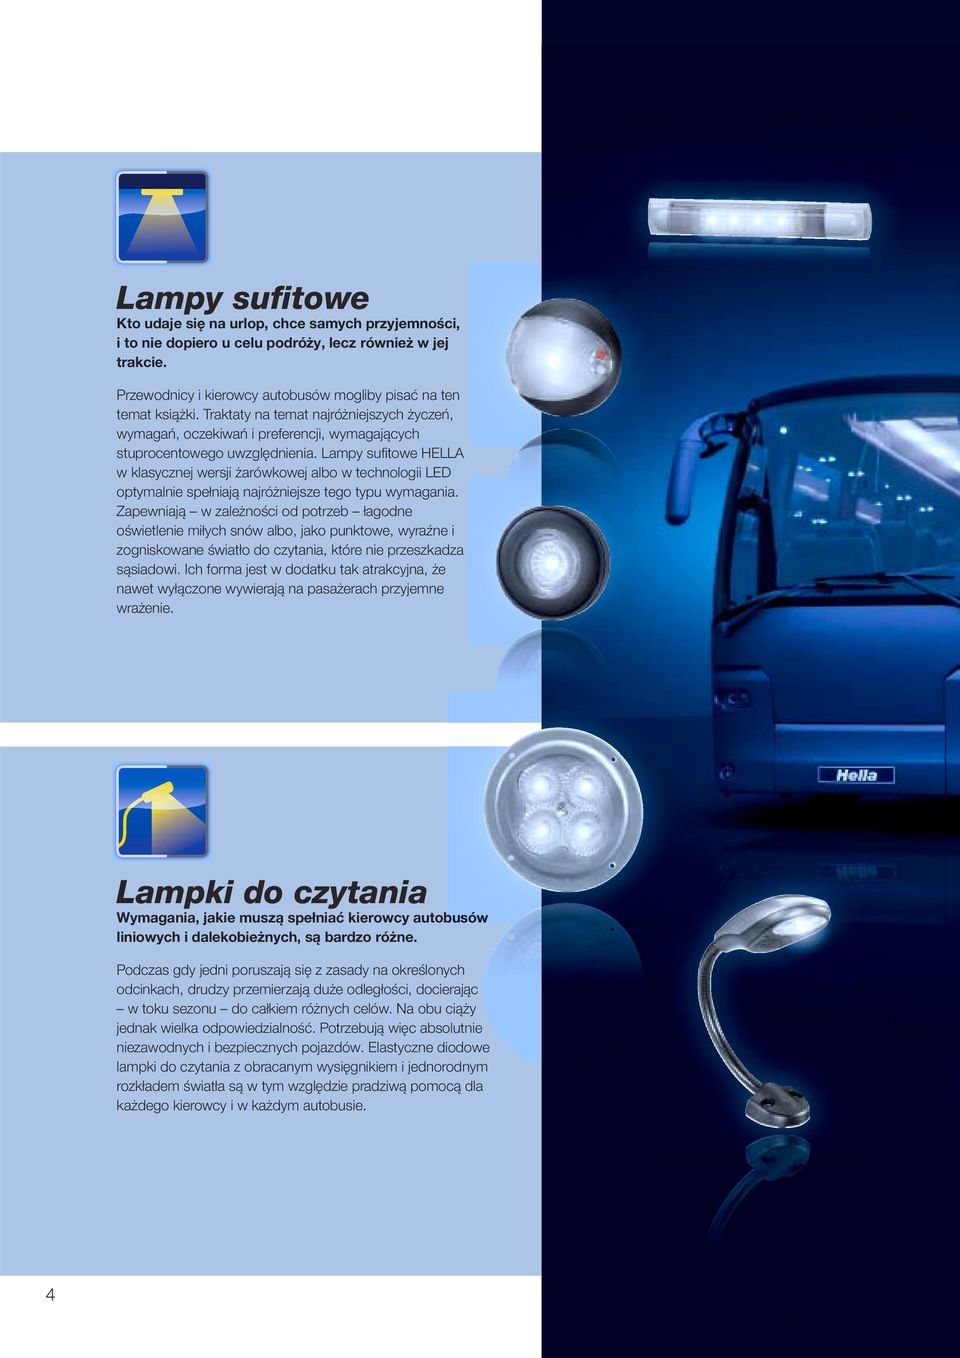 Lampy sufi towe HELLA w klasycznej wersji żarówkowej albo w technologii LED optymalnie spełniają najróżniejsze tego typu wymagania.